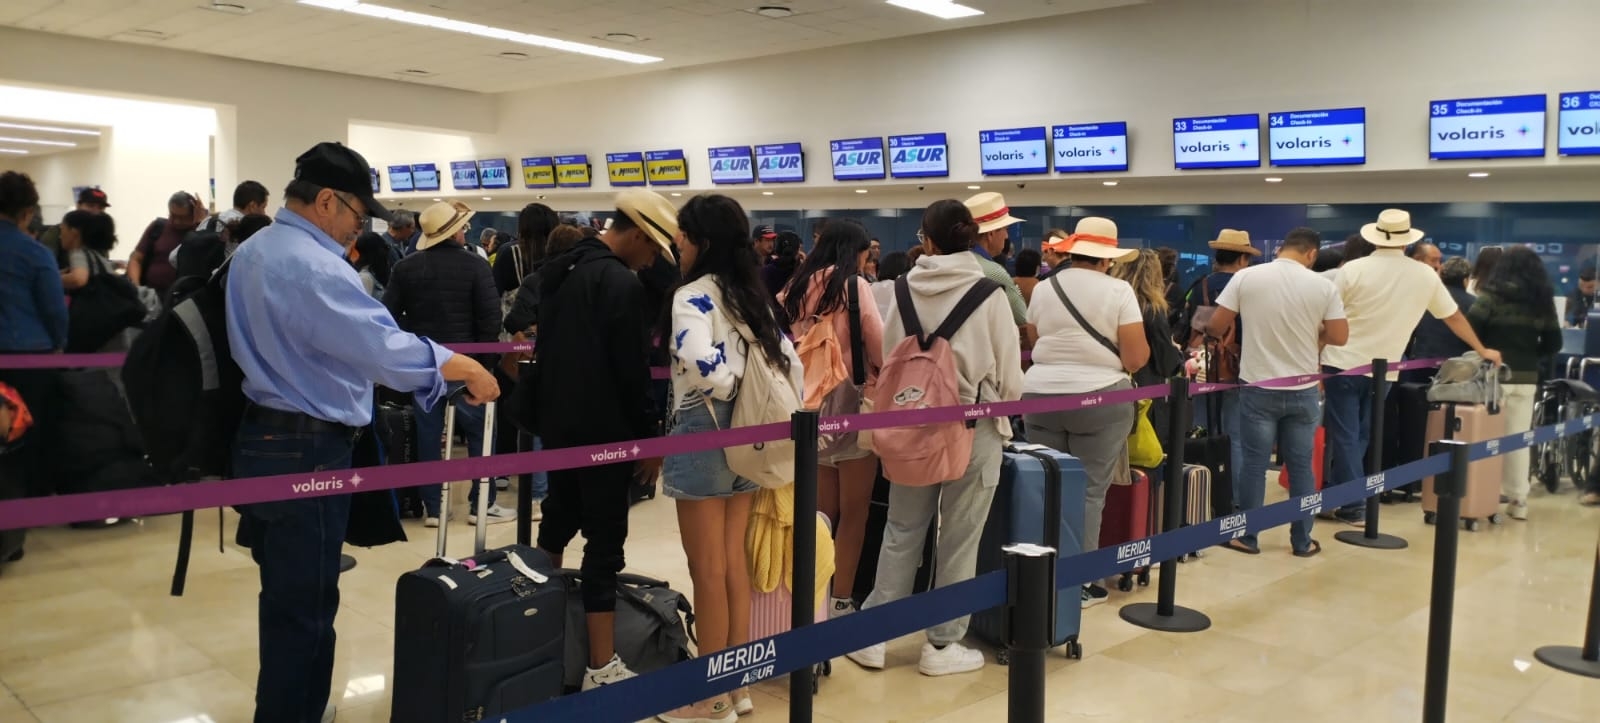 Volaris cancela vuelo de la ruta CDMX-Mérida